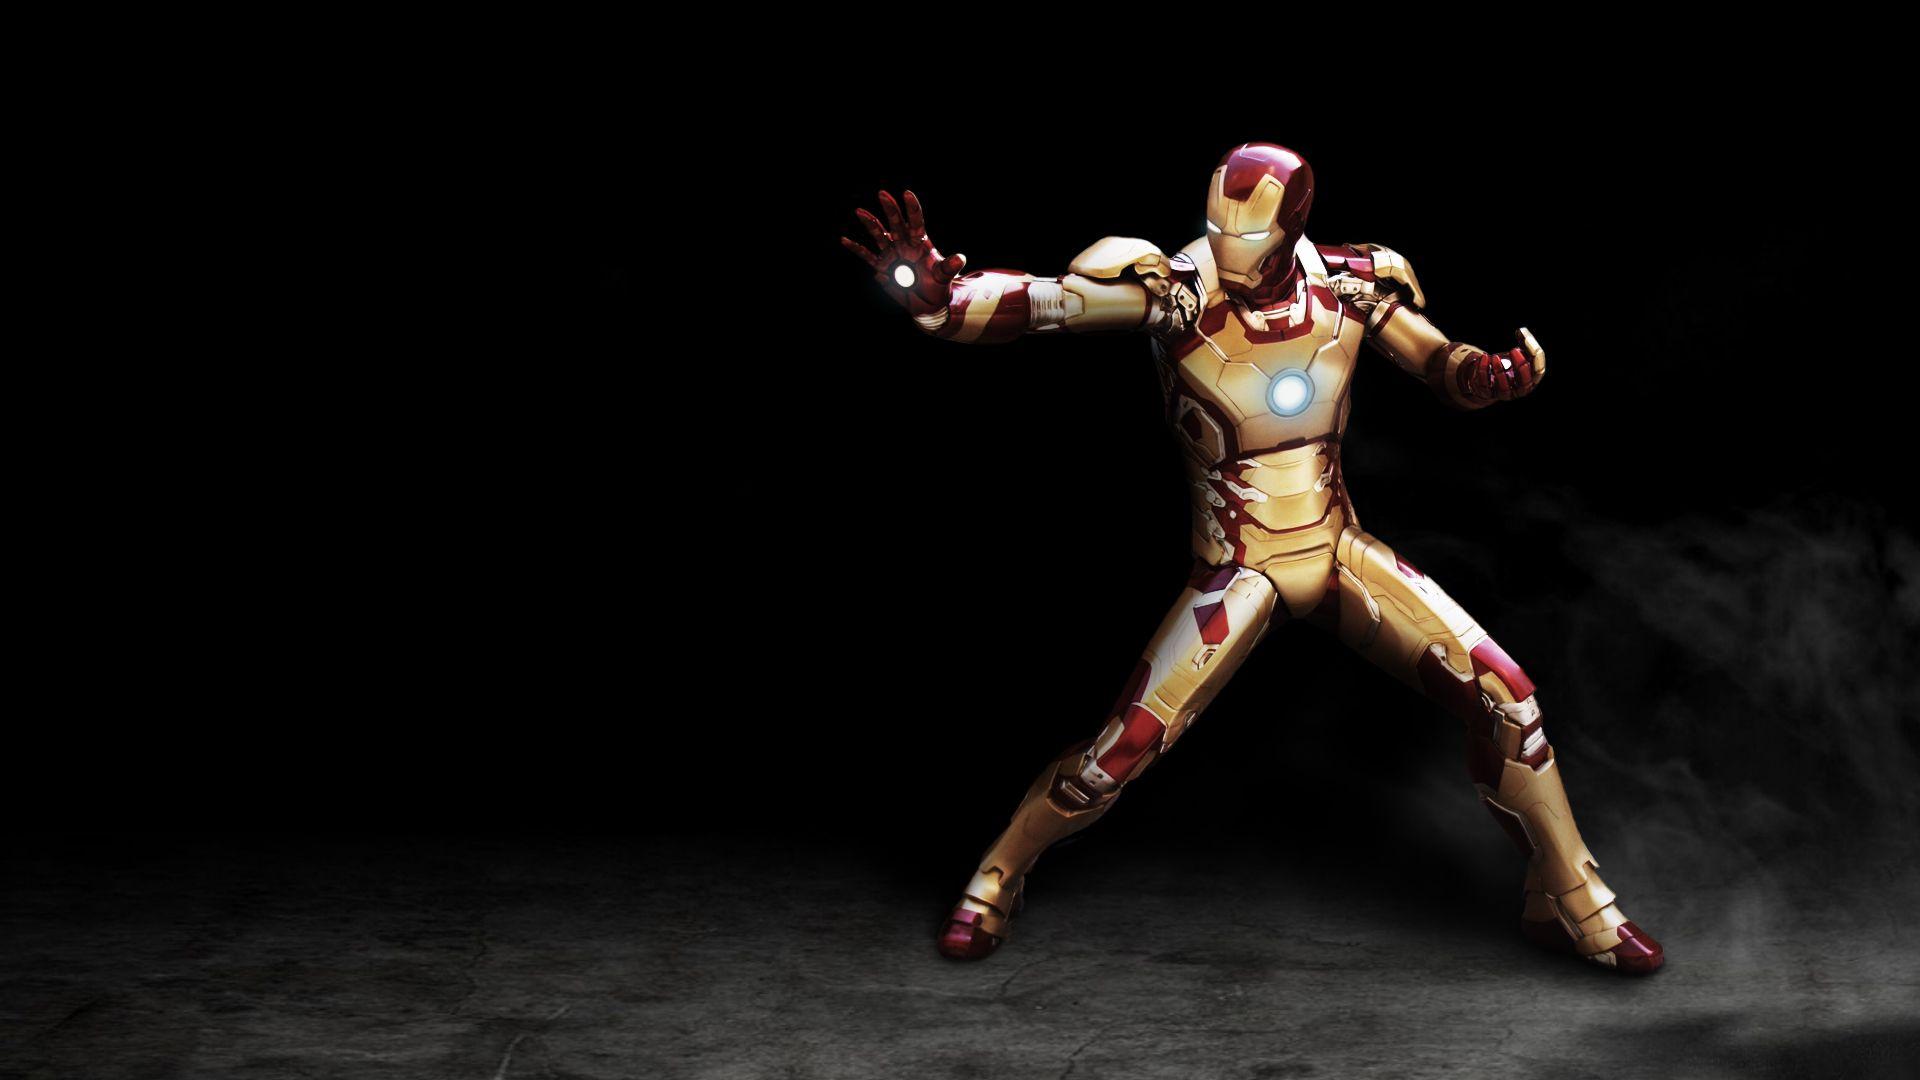 Iron Man Image Free Download